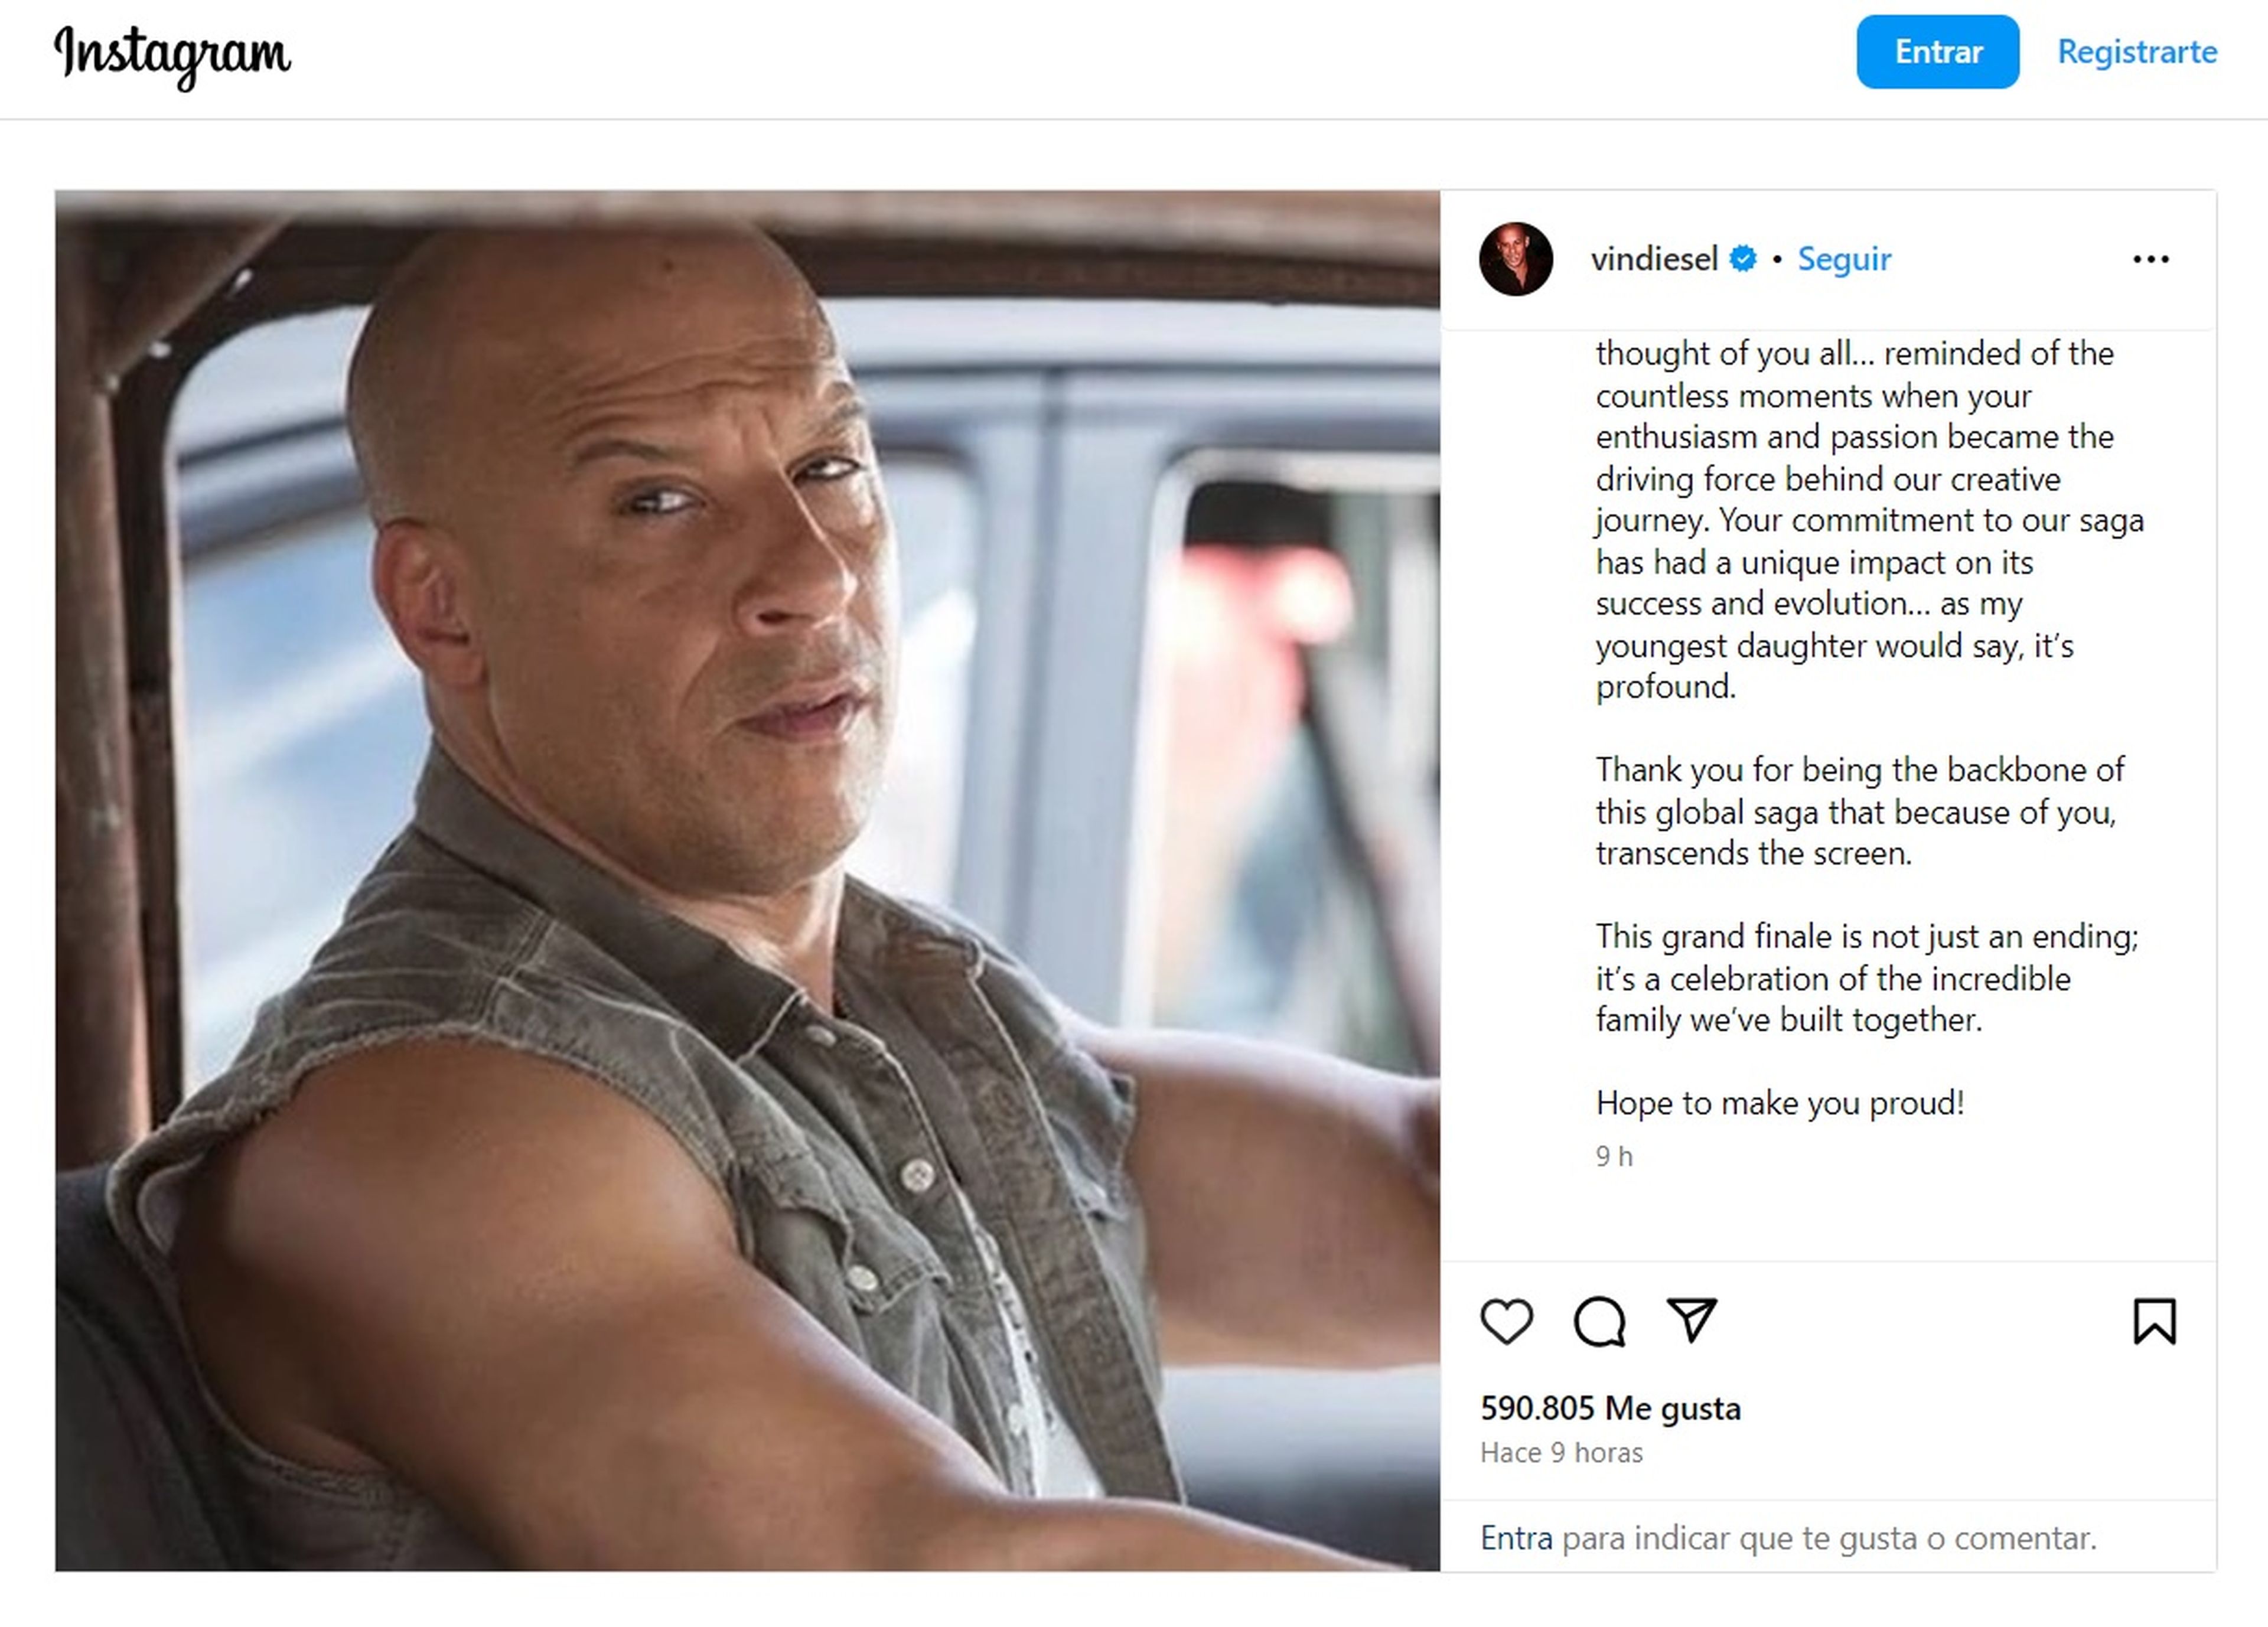 El último mensaje de Vin Diesel parece confirmar el final de Fast & Furious, la famosa saga de películas de A todo gas 